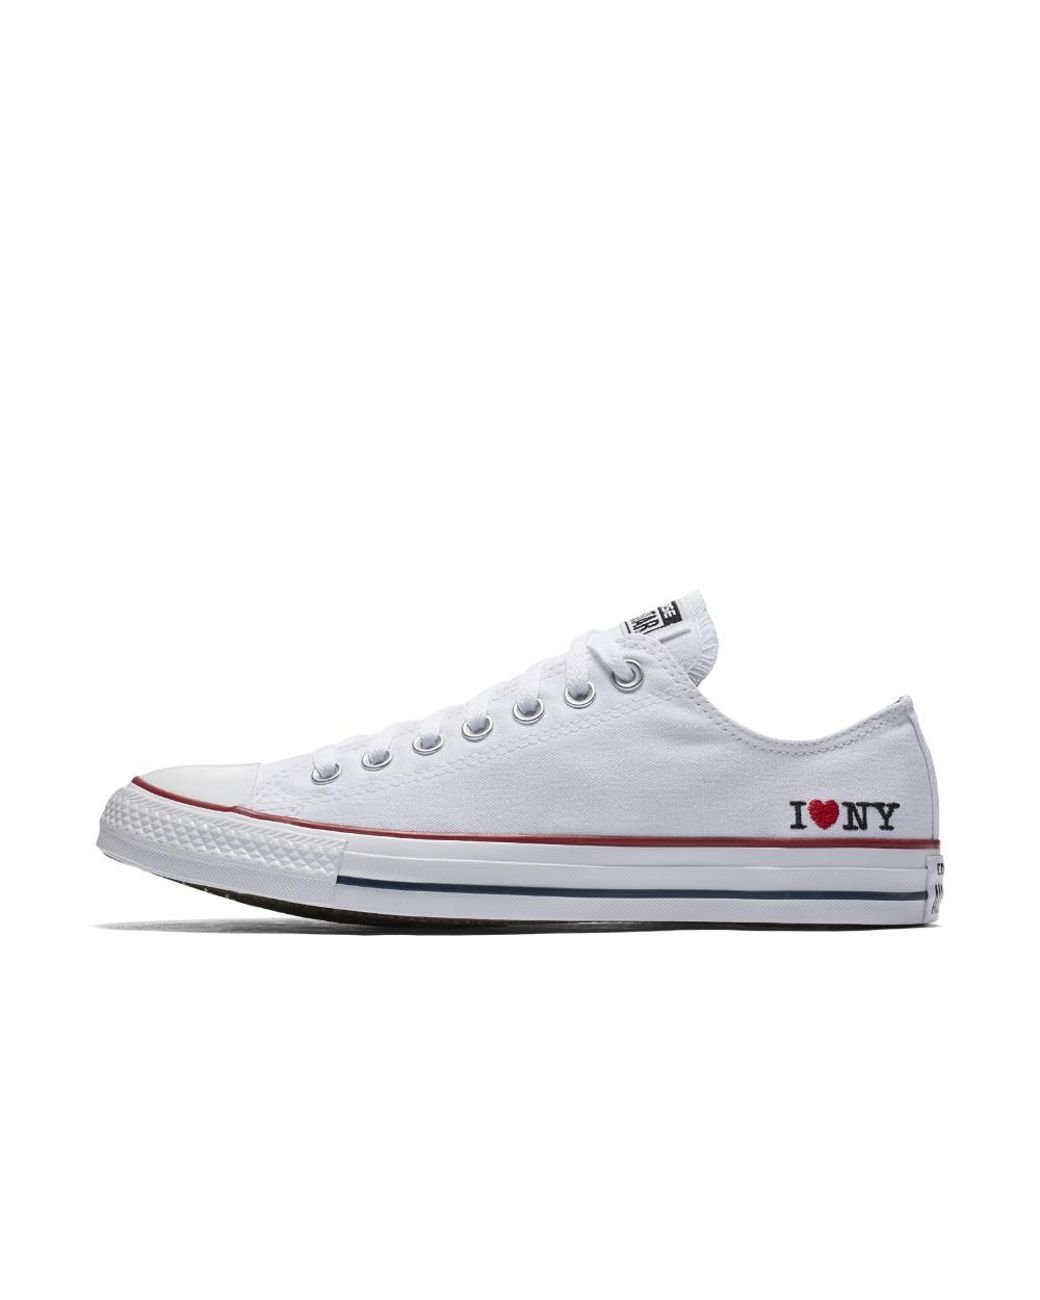 Muskuløs nevø krøllet Converse Chuck Taylor All Star I Love Ny Low Top Shoes White Size 9.5 11.5  | Lyst